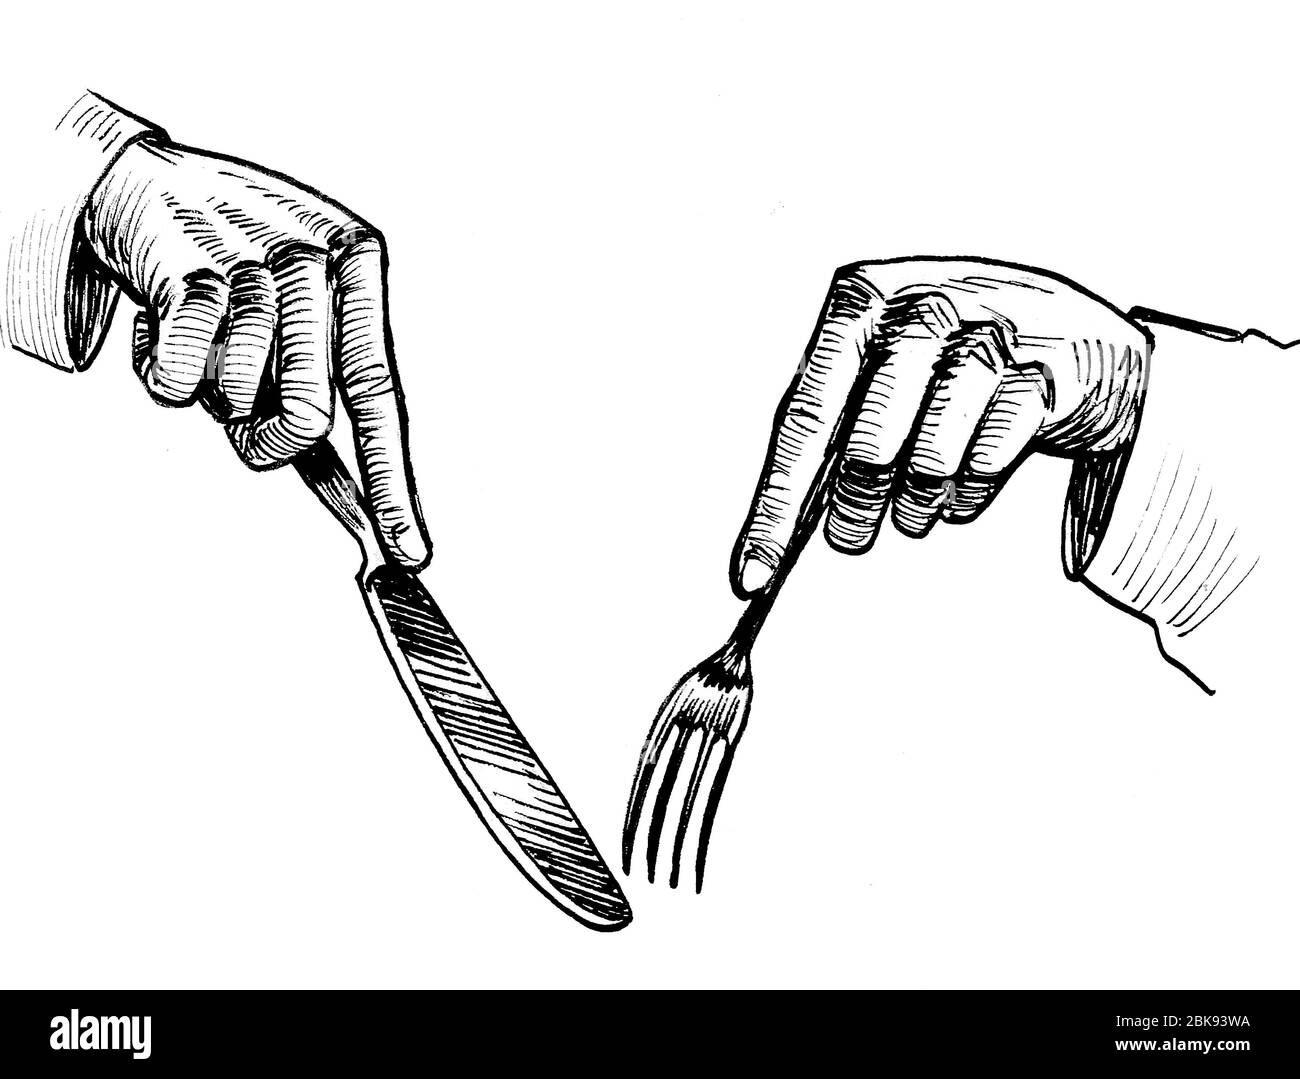 Как нарисовать руку с ножом